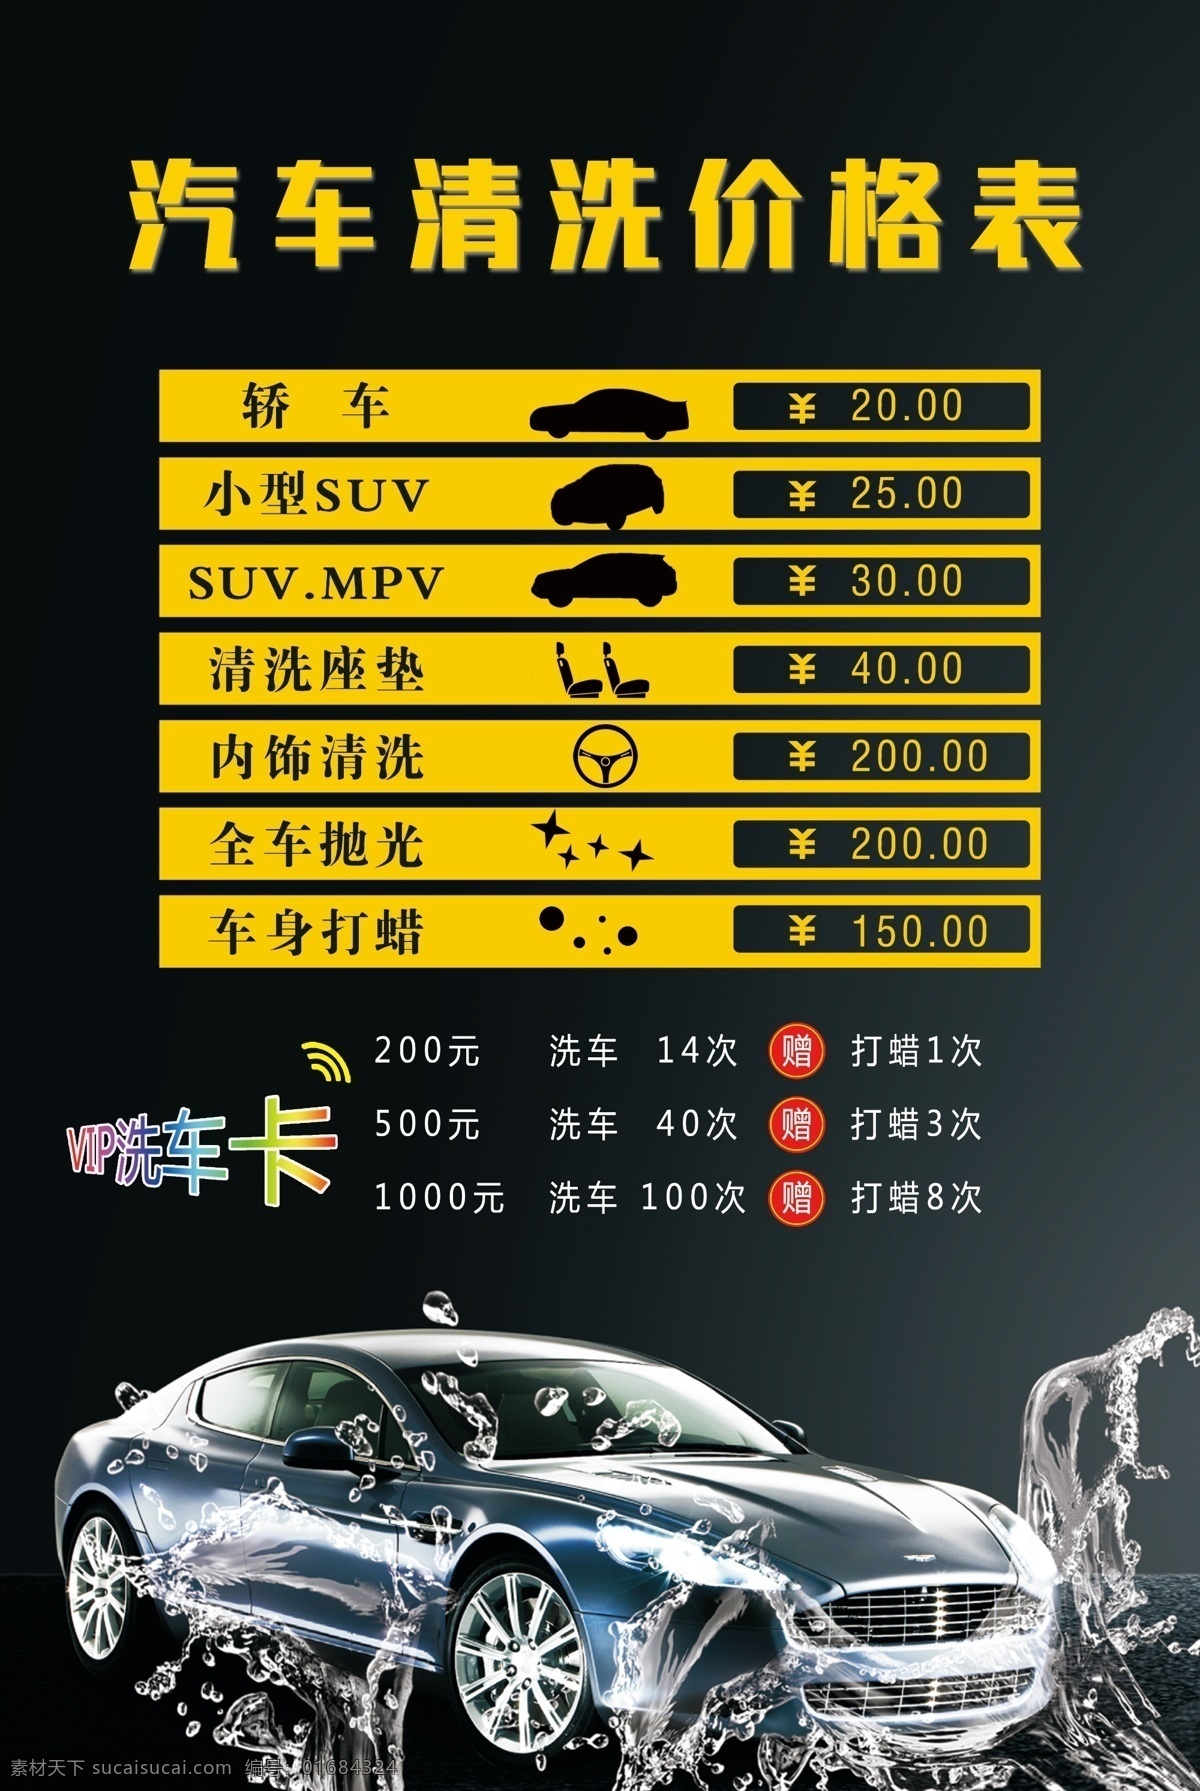 汽车 洗车 价目表 价格 洗车价格 活动 单页 海报 展板 展板海报